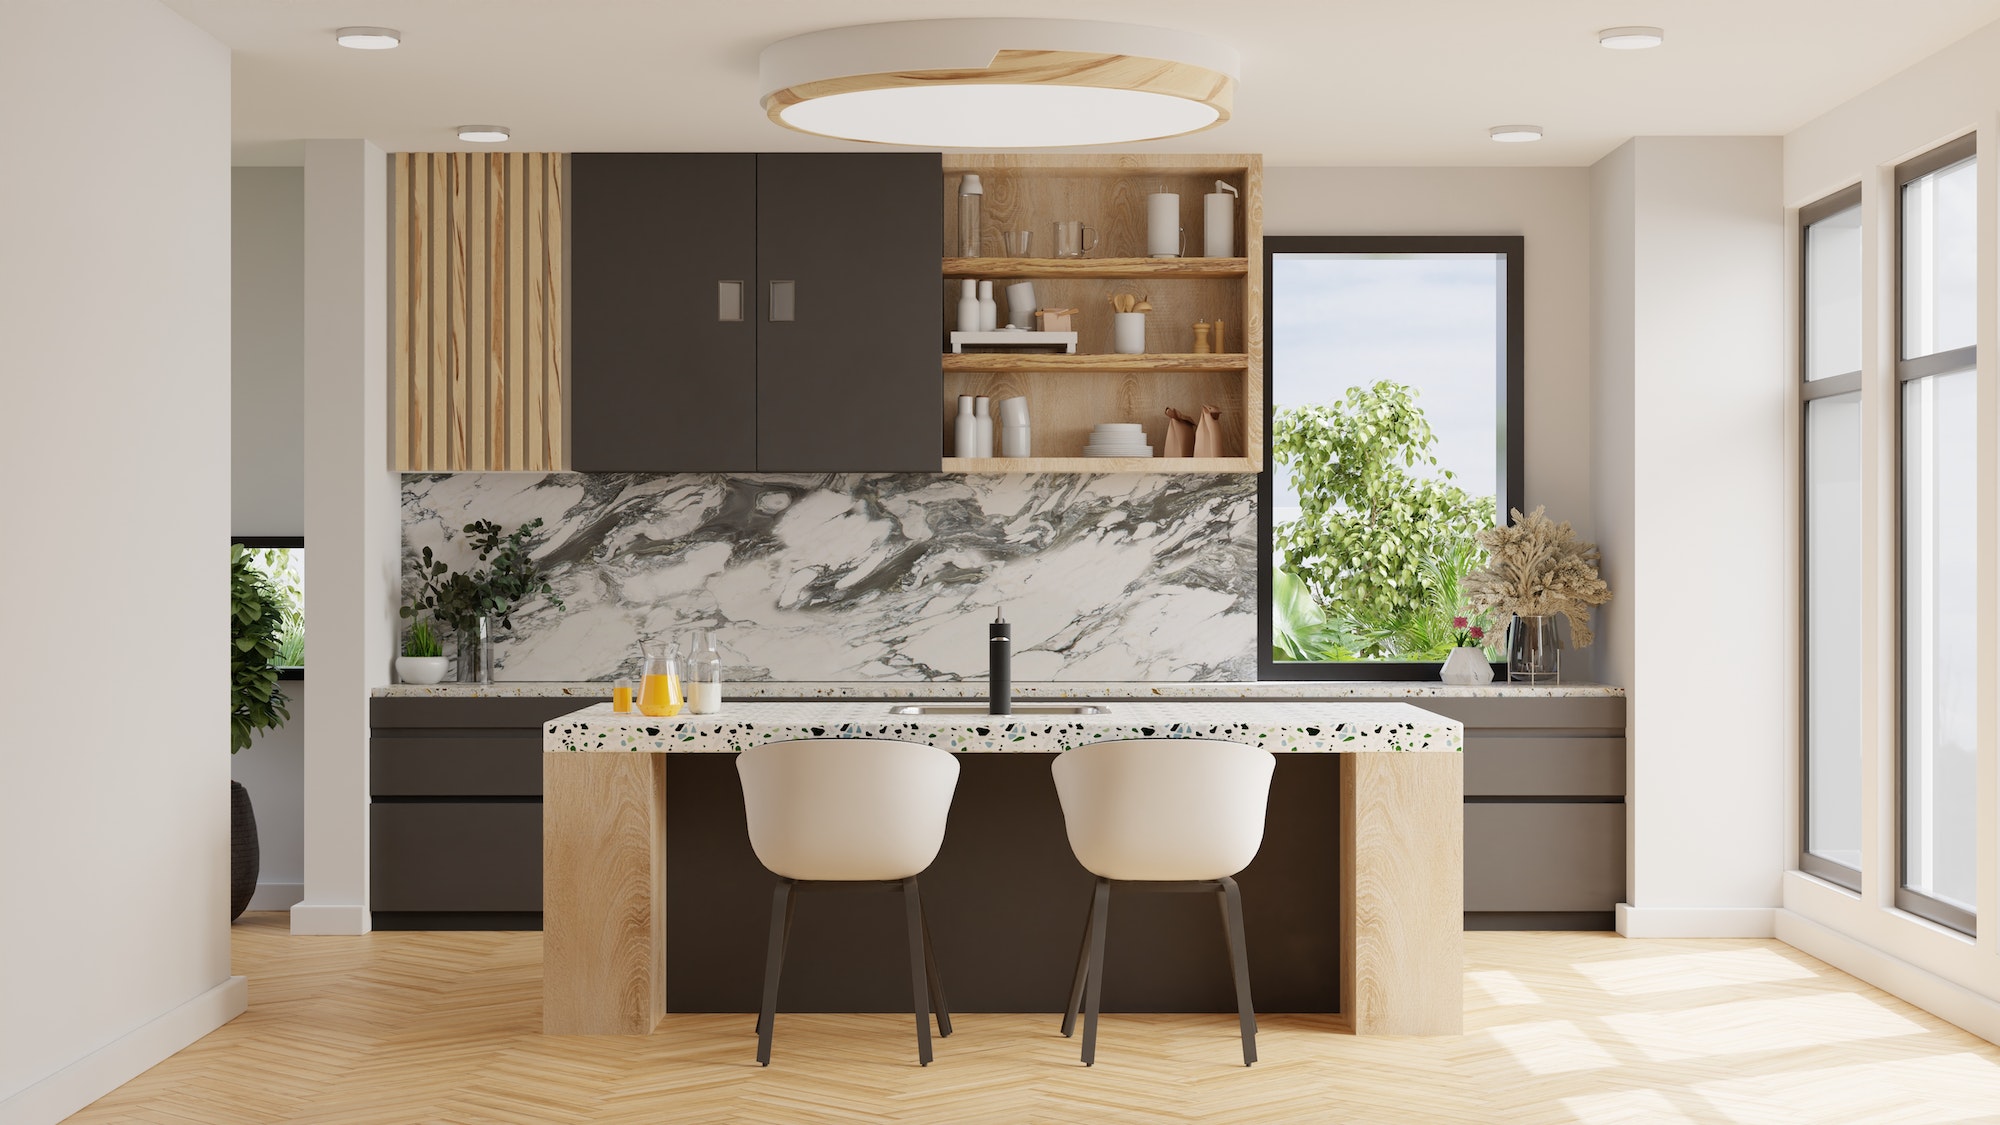 Modern style kitchen interior design,White and brown modern kitchen